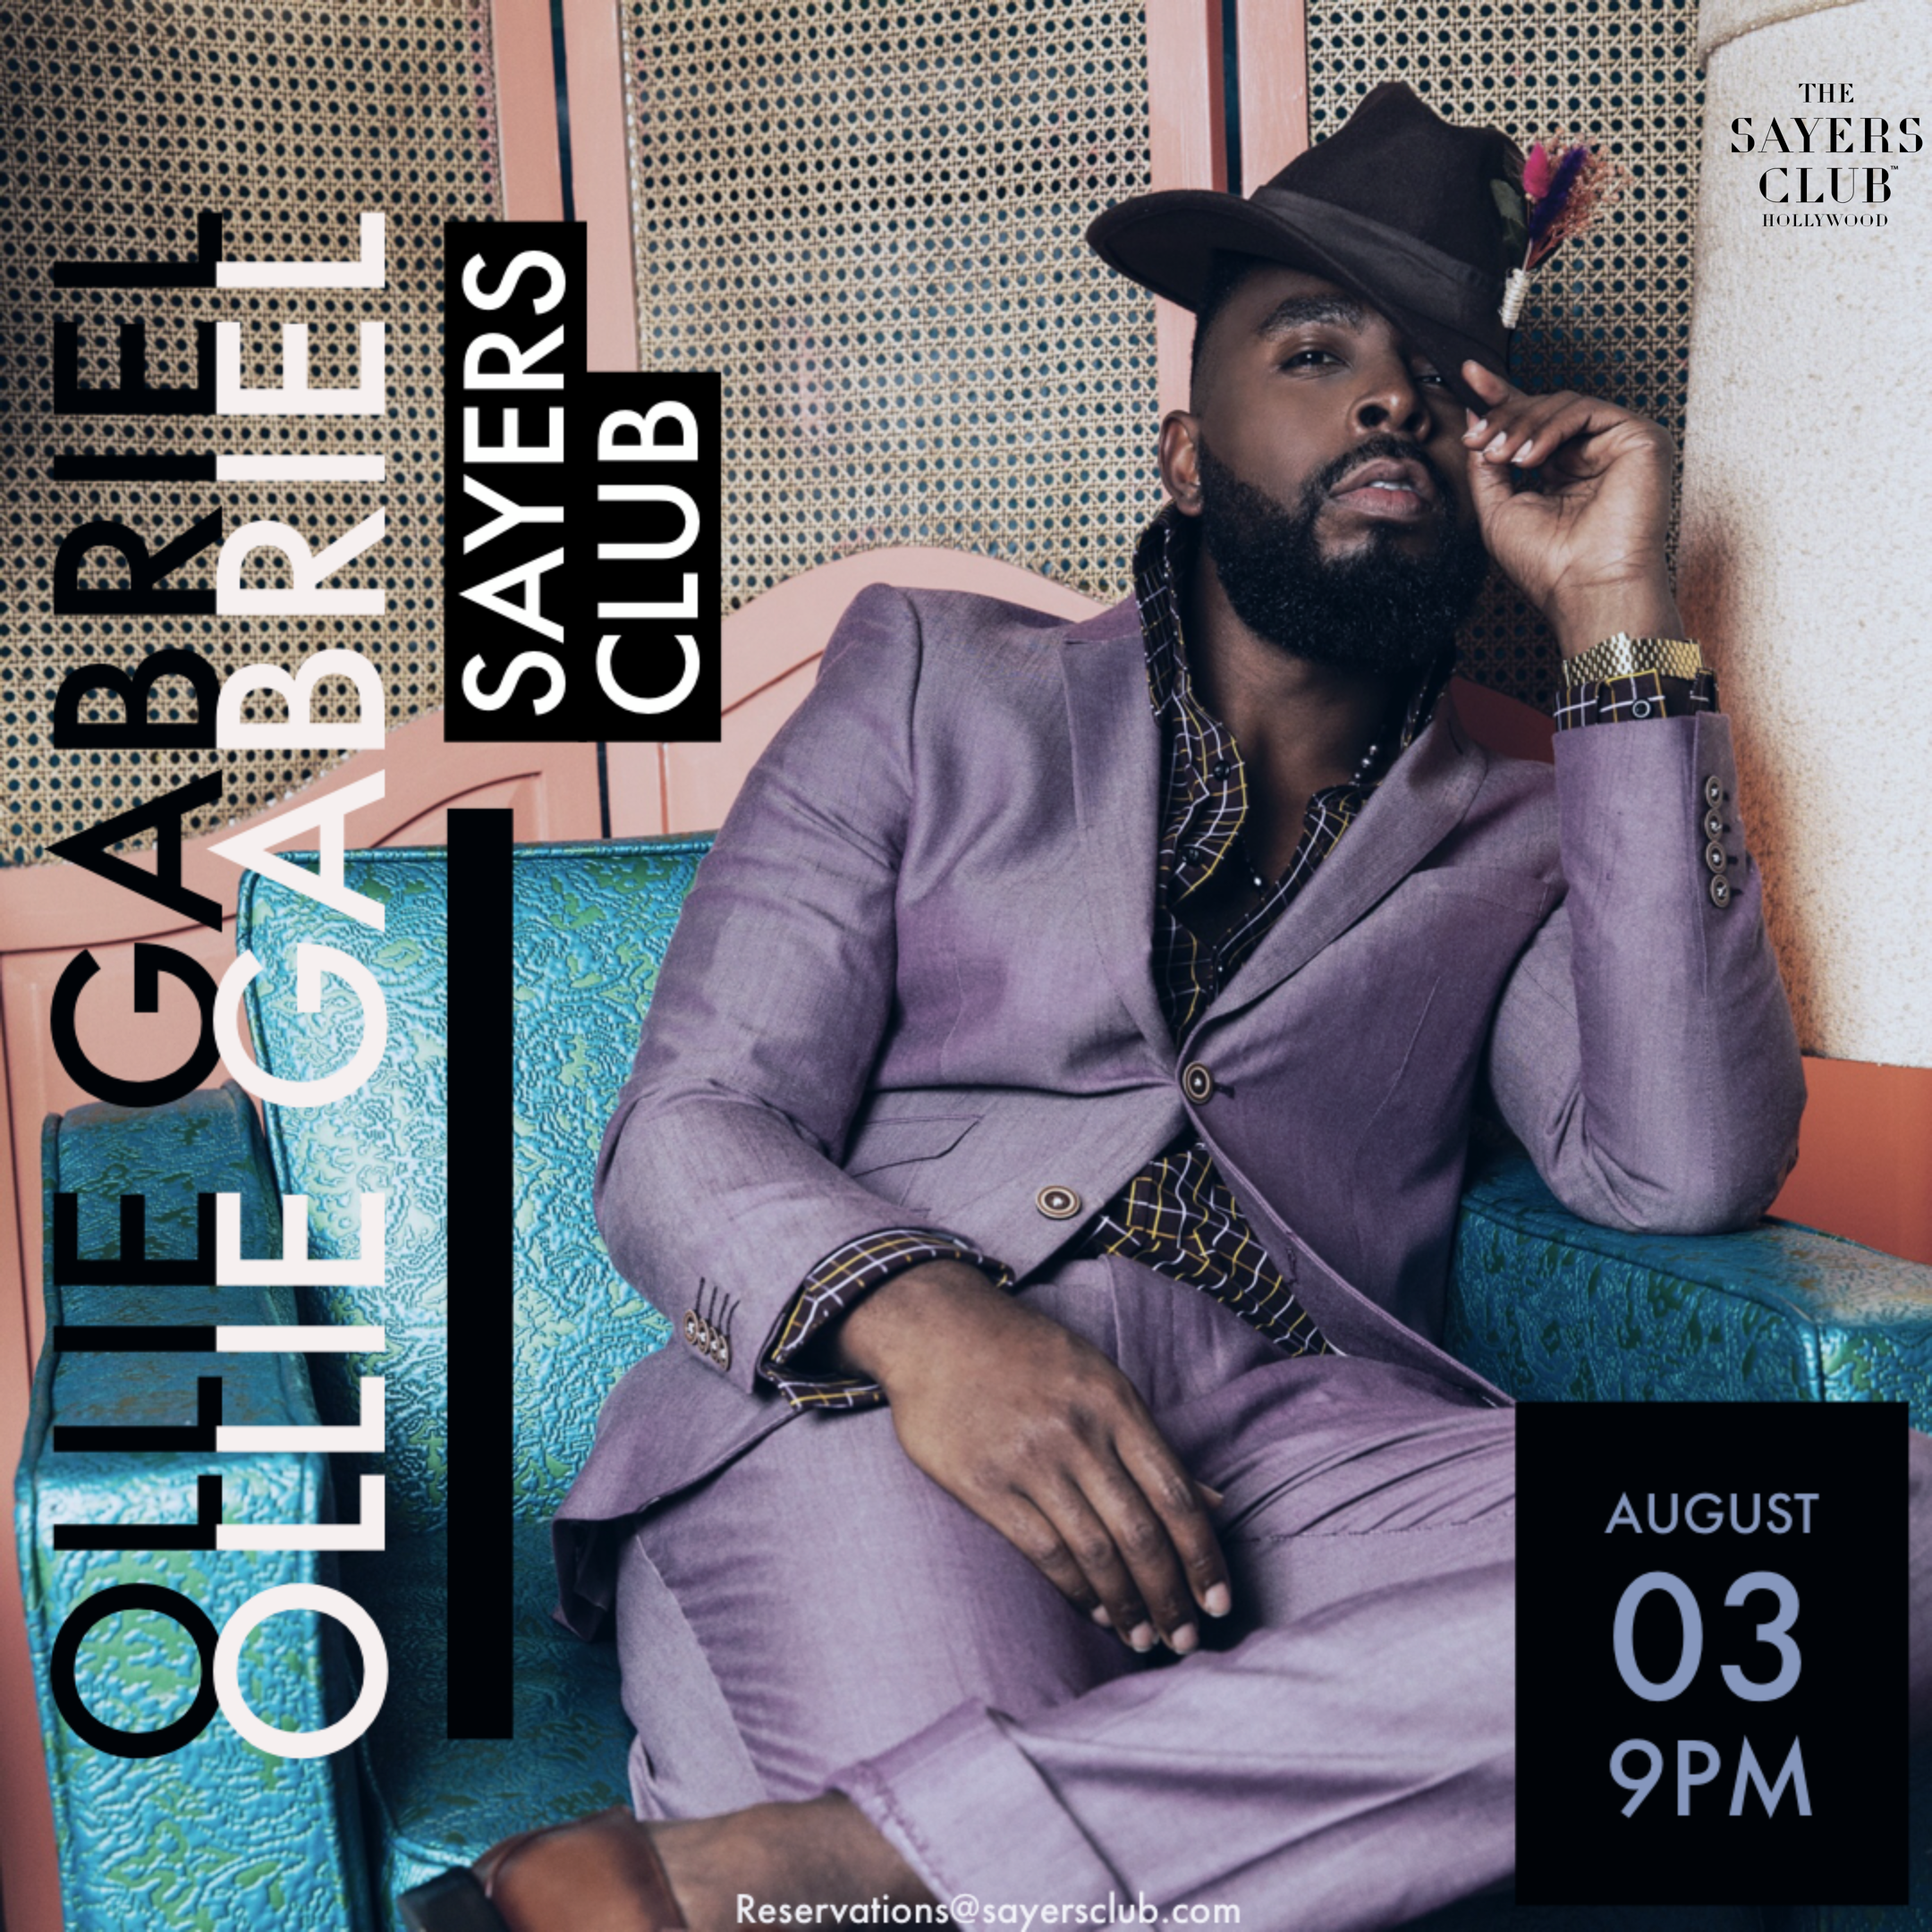 Ollie Gabriel LIVE @ The Sayers Club, Hollywood